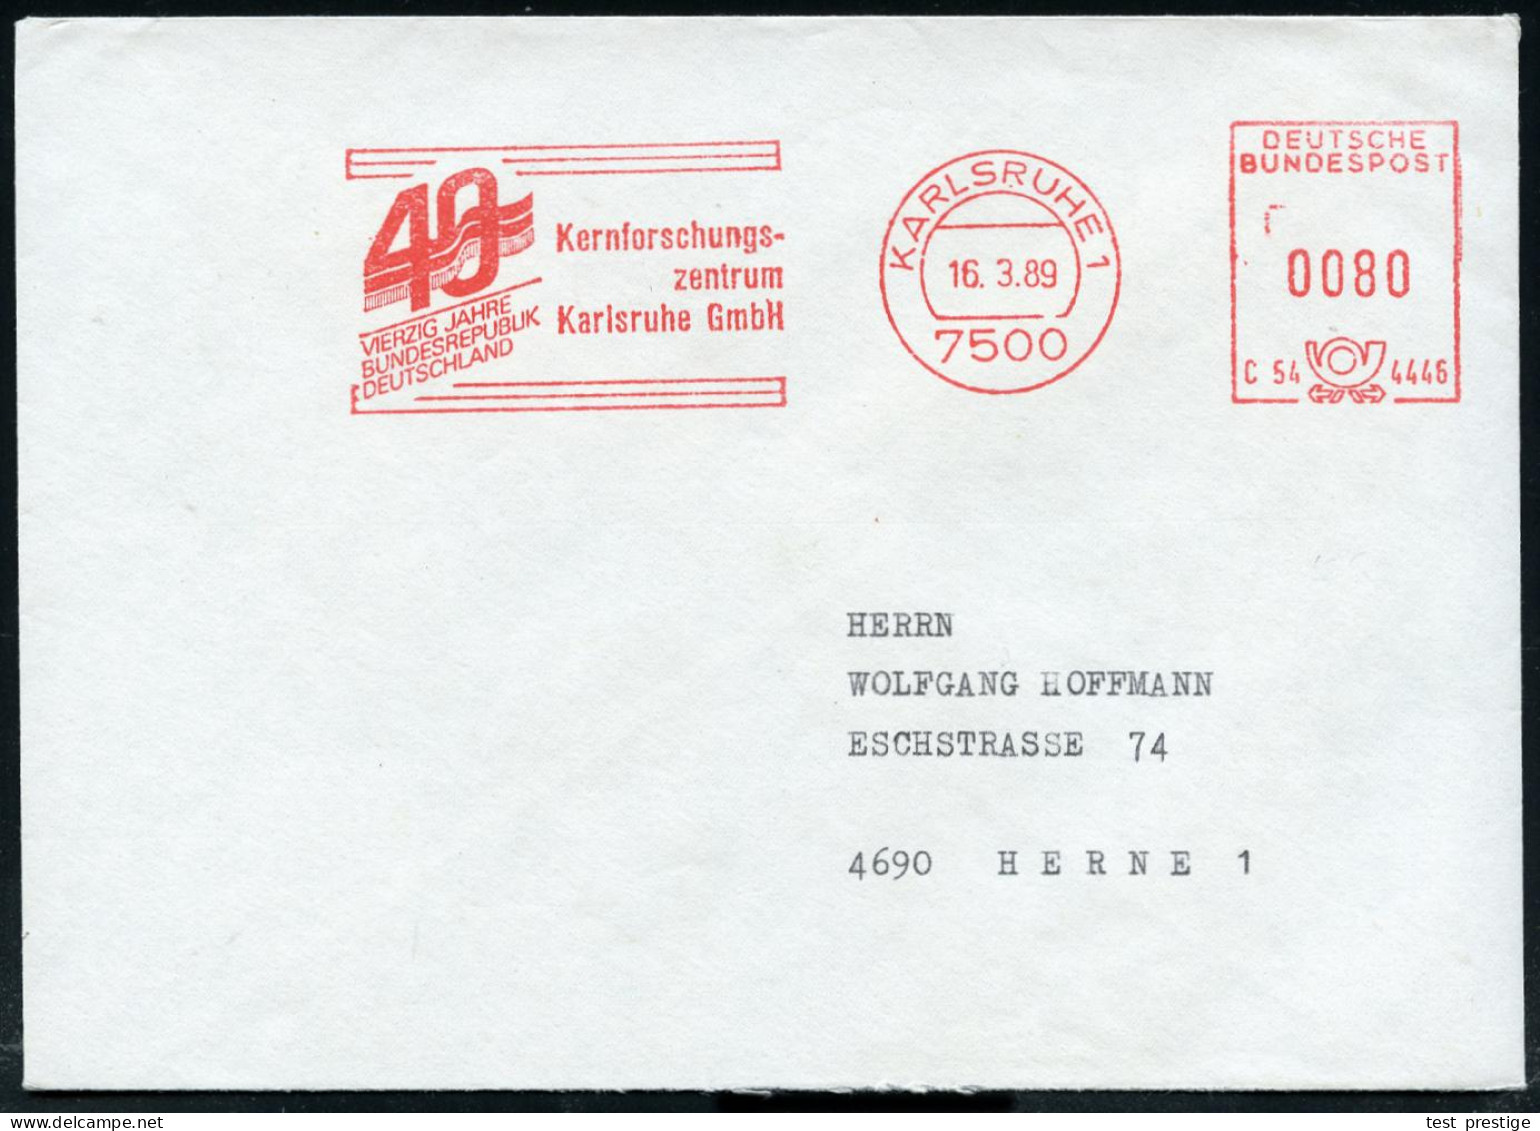 7500 KARLSRUHE 1/ C54 4446/ VIERZIG JAHRE/ BRD/ Kernforschungs-/ Zentrum.. 1989 (16,3,) Seltener Jubil.-AFS (Flagge) Kla - Atomo